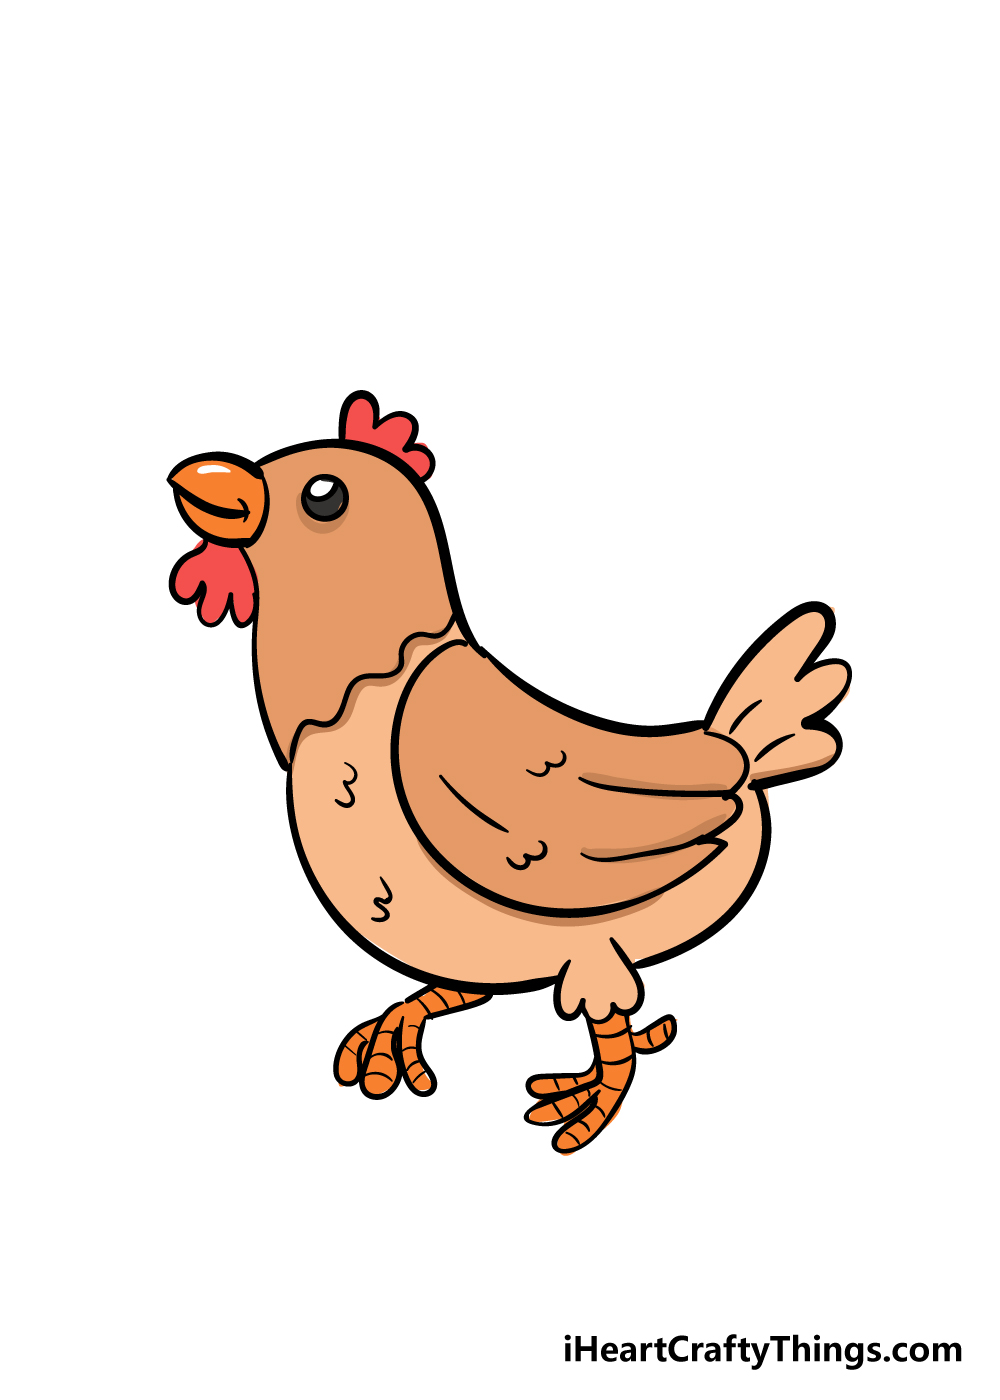 Chicken8 - Cách vẽ con gà đơn giản đẹp với 8 bước cơ bản hướng dẫn chi tiết